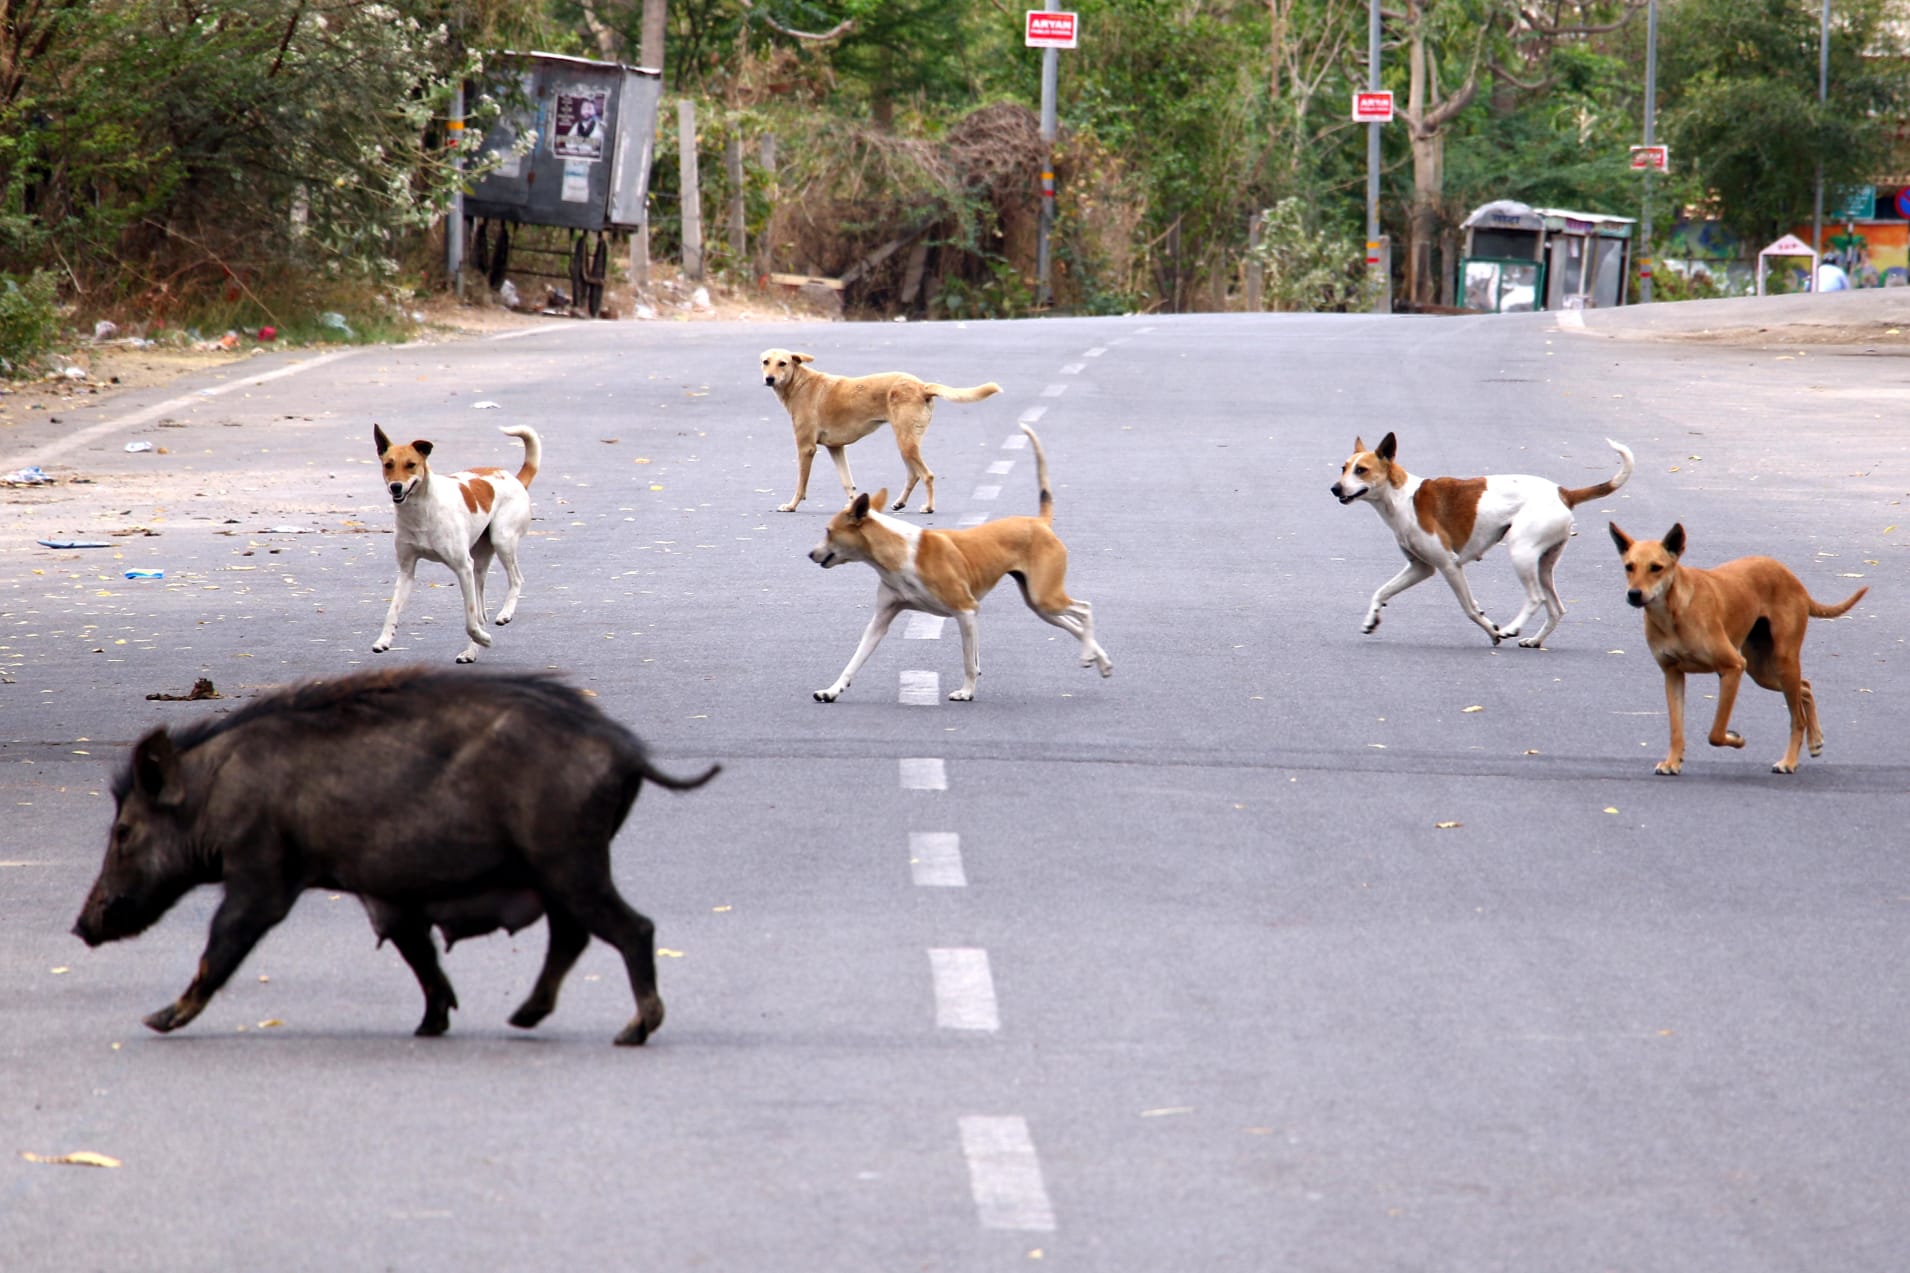 Con người thực hiện cách ly xã hội, thú hoang bắt đầu xuất hiện nhiều hơn trên đường phố